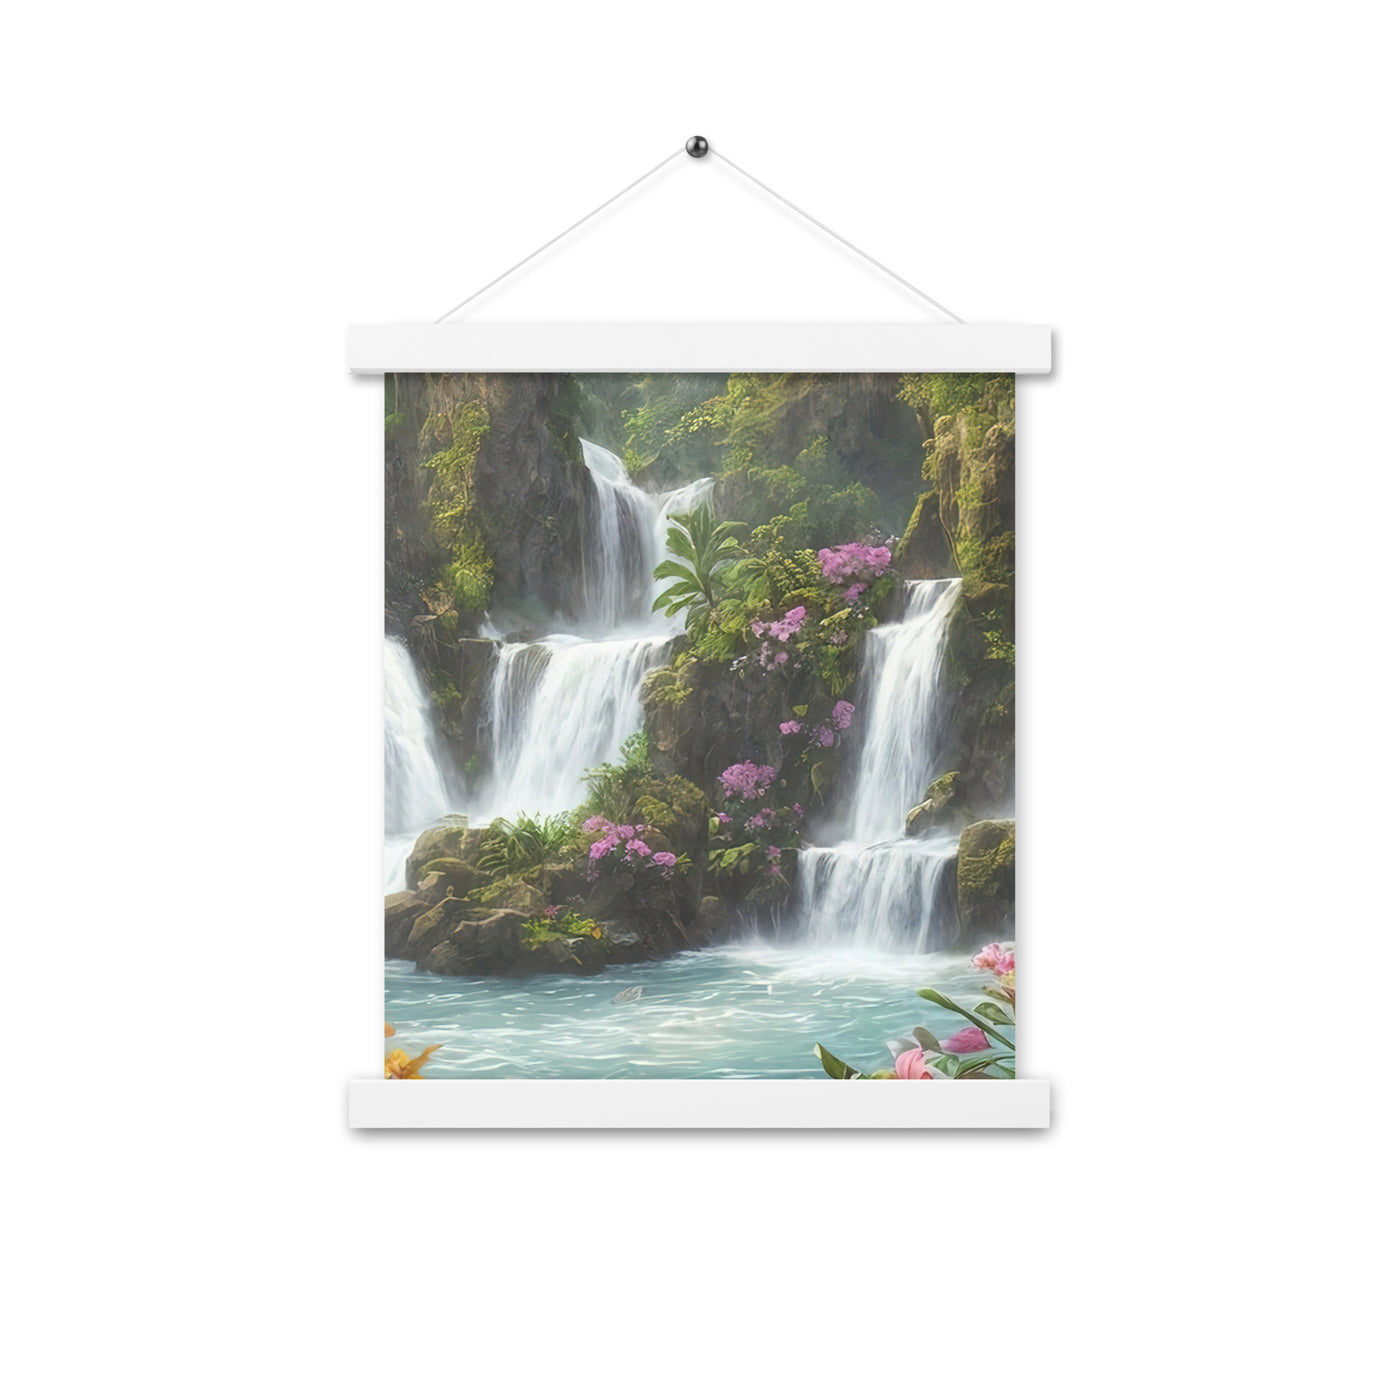 Wasserfall im Wald und Blumen - Schöne Malerei - Premium Poster mit Aufhängung camping xxx 27.9 x 35.6 cm